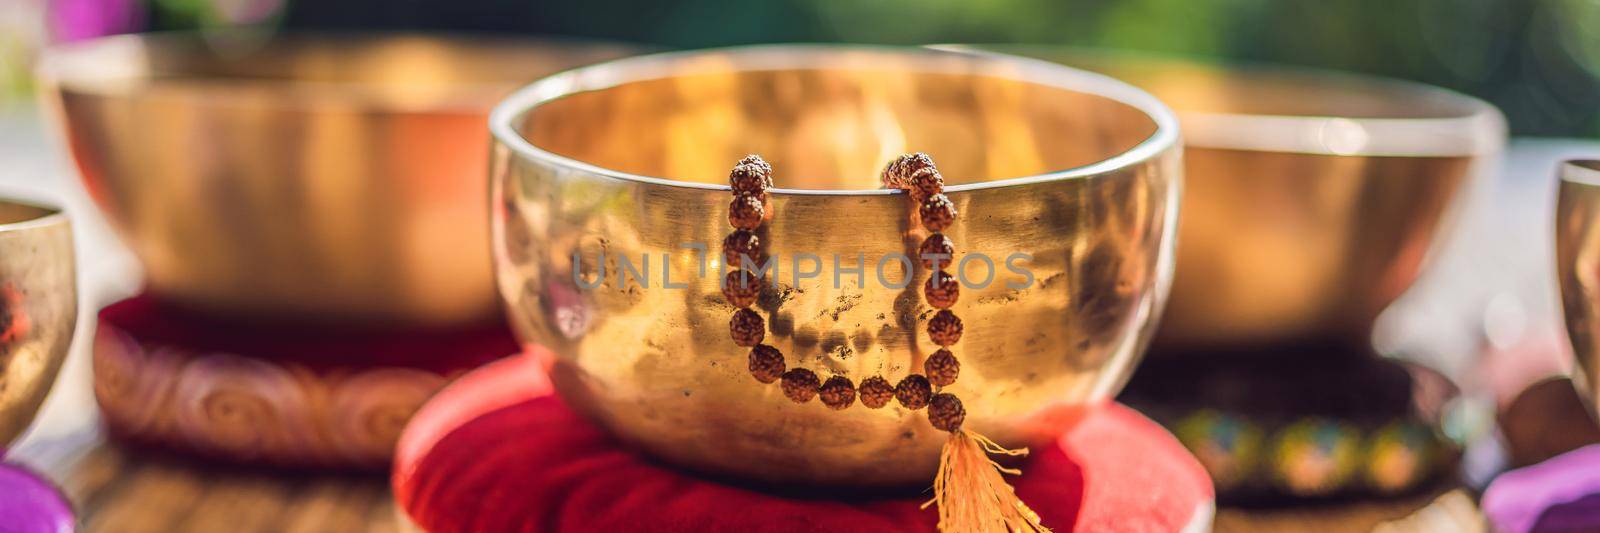 Tibetan singing bowls on a straw mat BANNER, LONG FORMAT by galitskaya